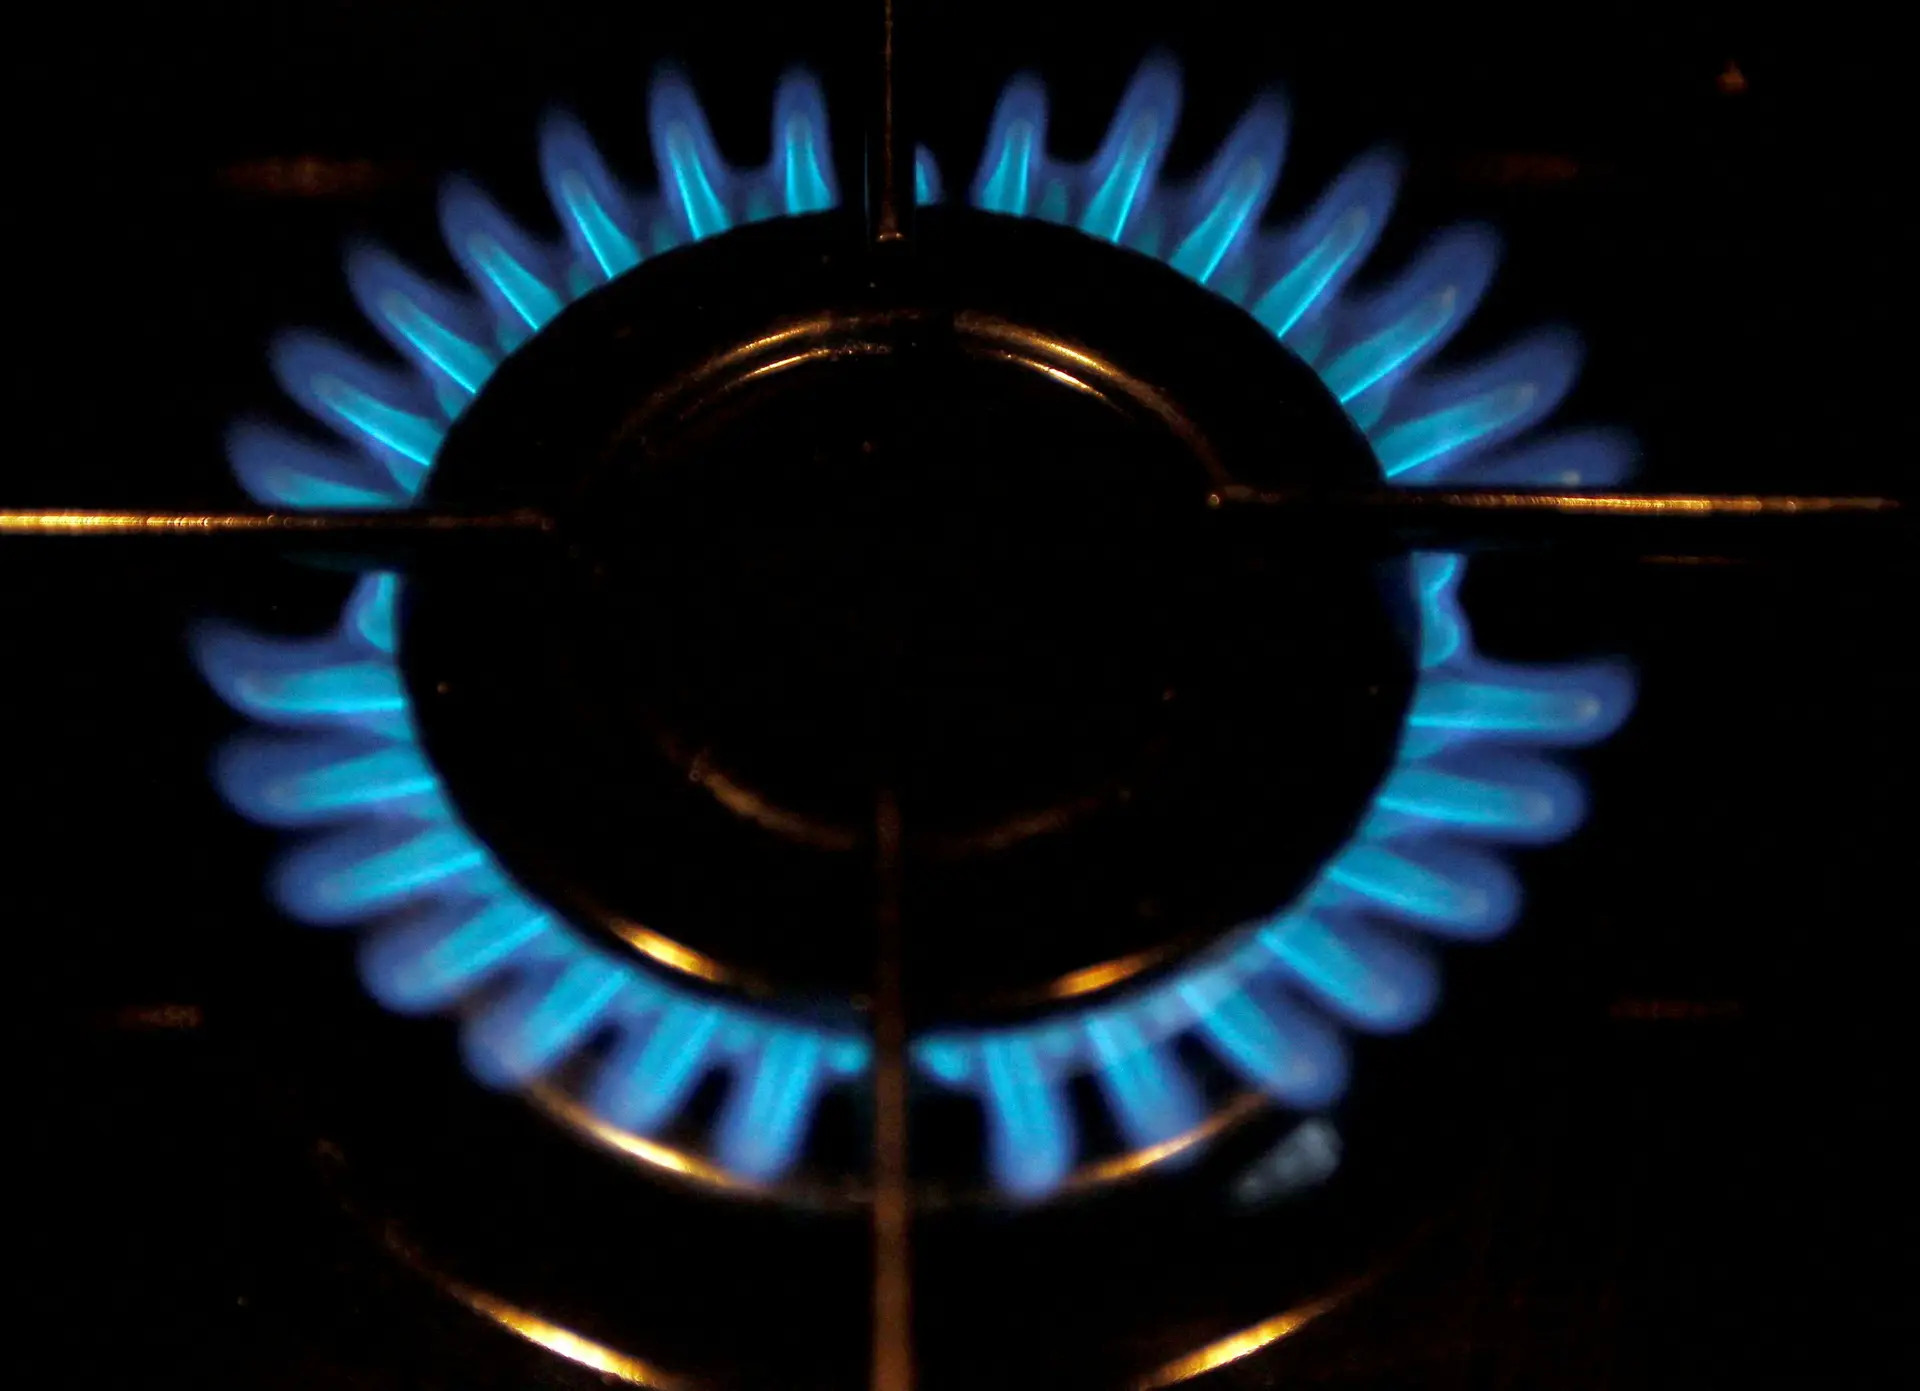 Regulador da energia propõe subida de 2,4% das tarifas reguladas de gás natural a vigorar a partir de outubro